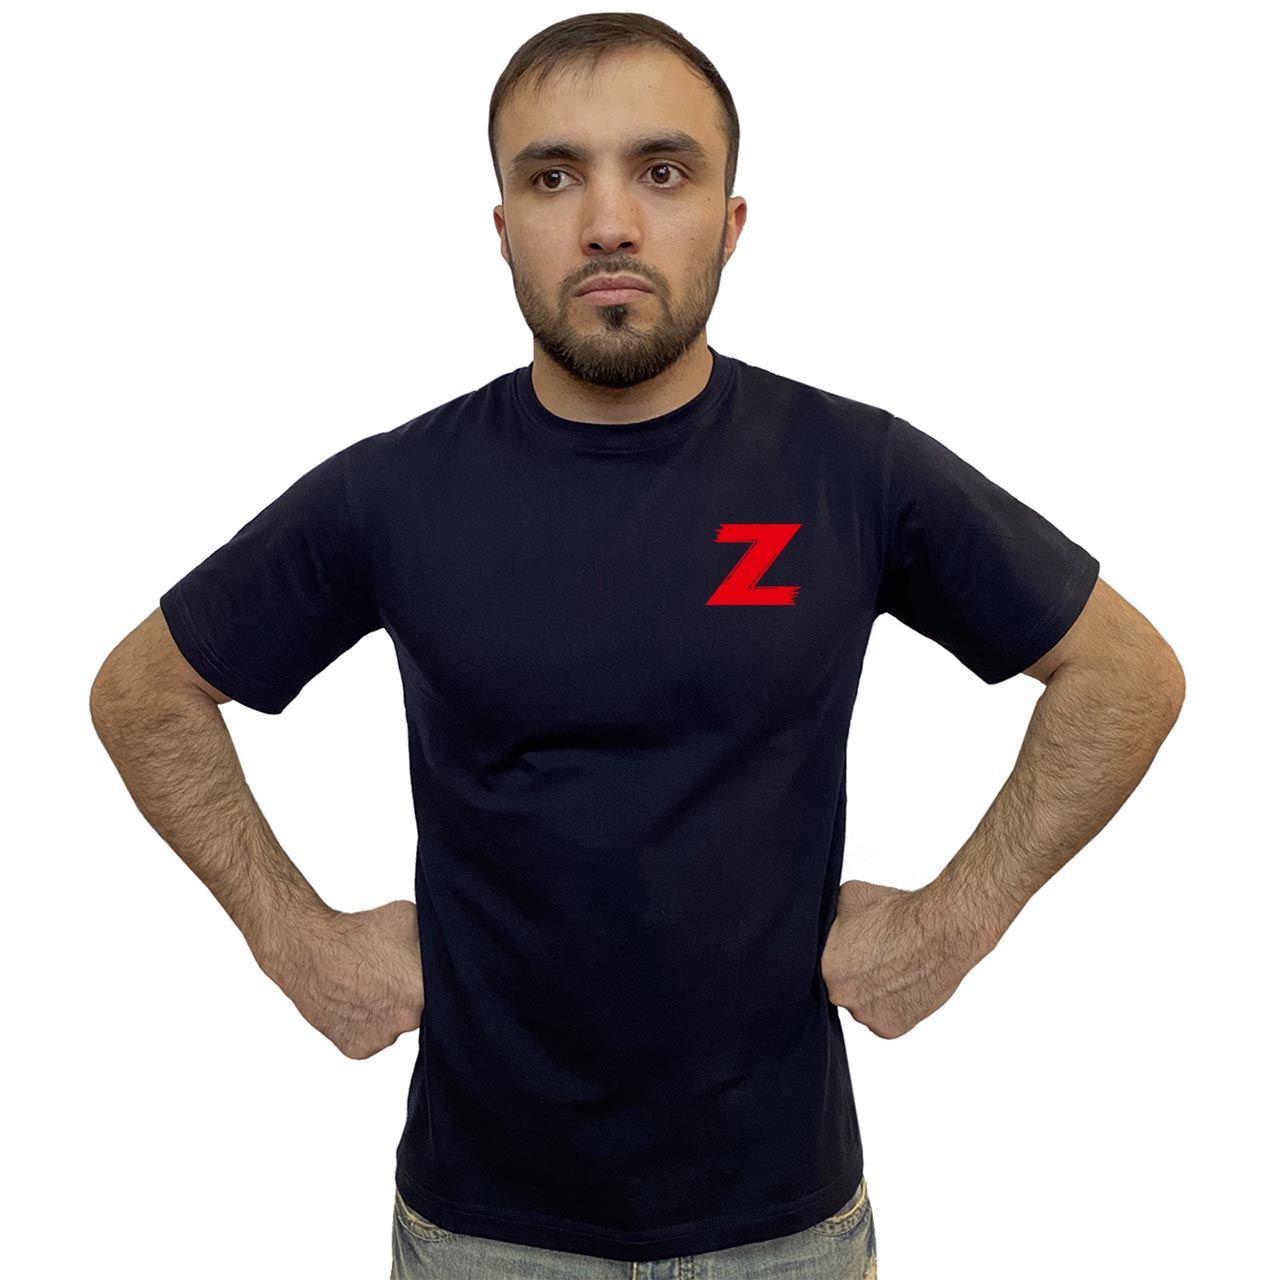 Тёмно-синяя футболка с трансфером «Z»